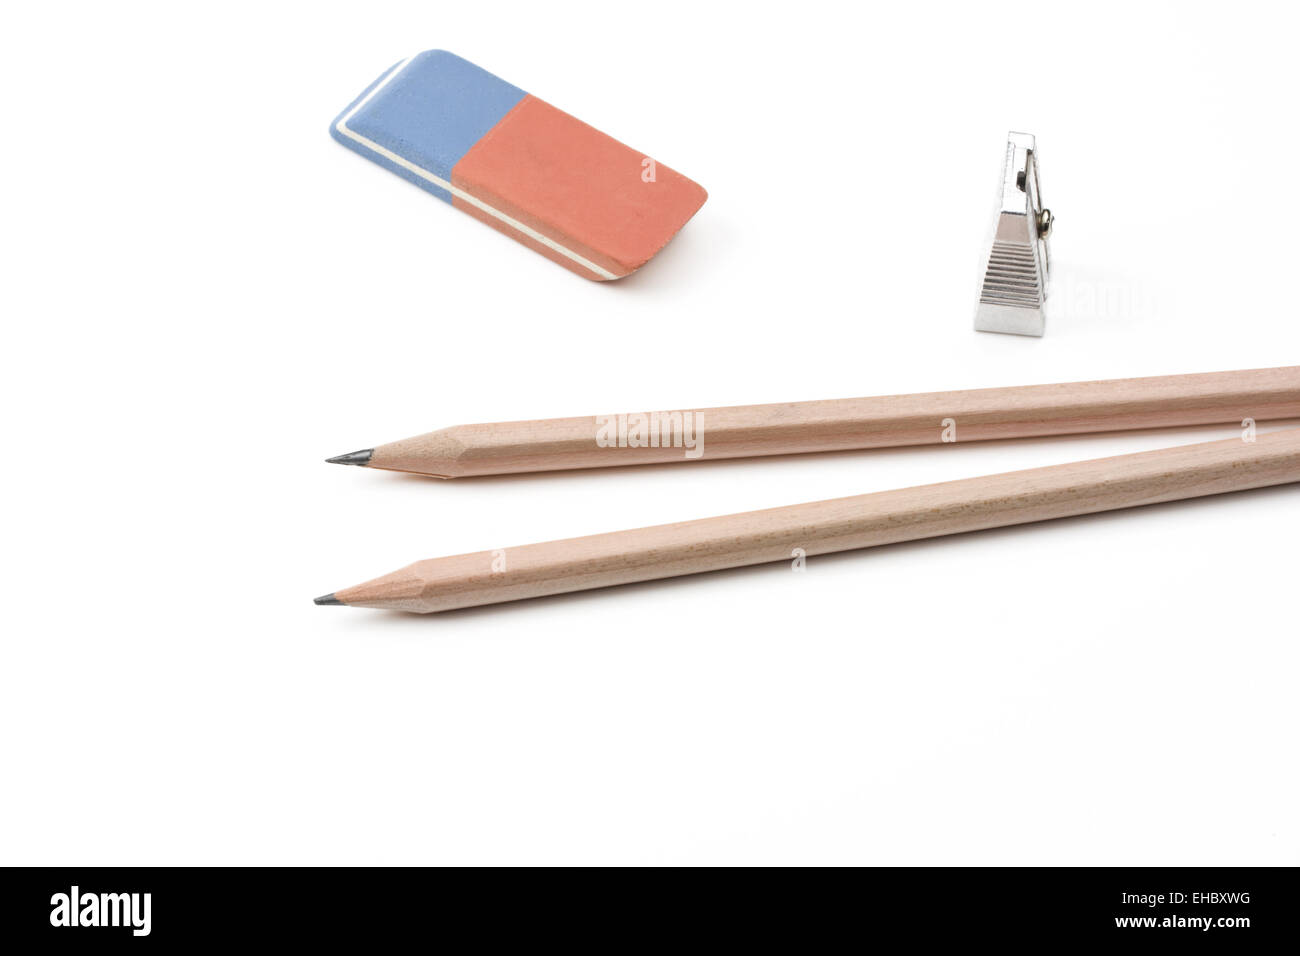 Un lápiz, un sacapuntas y una goma de borrar Fotografía de stock - Alamy